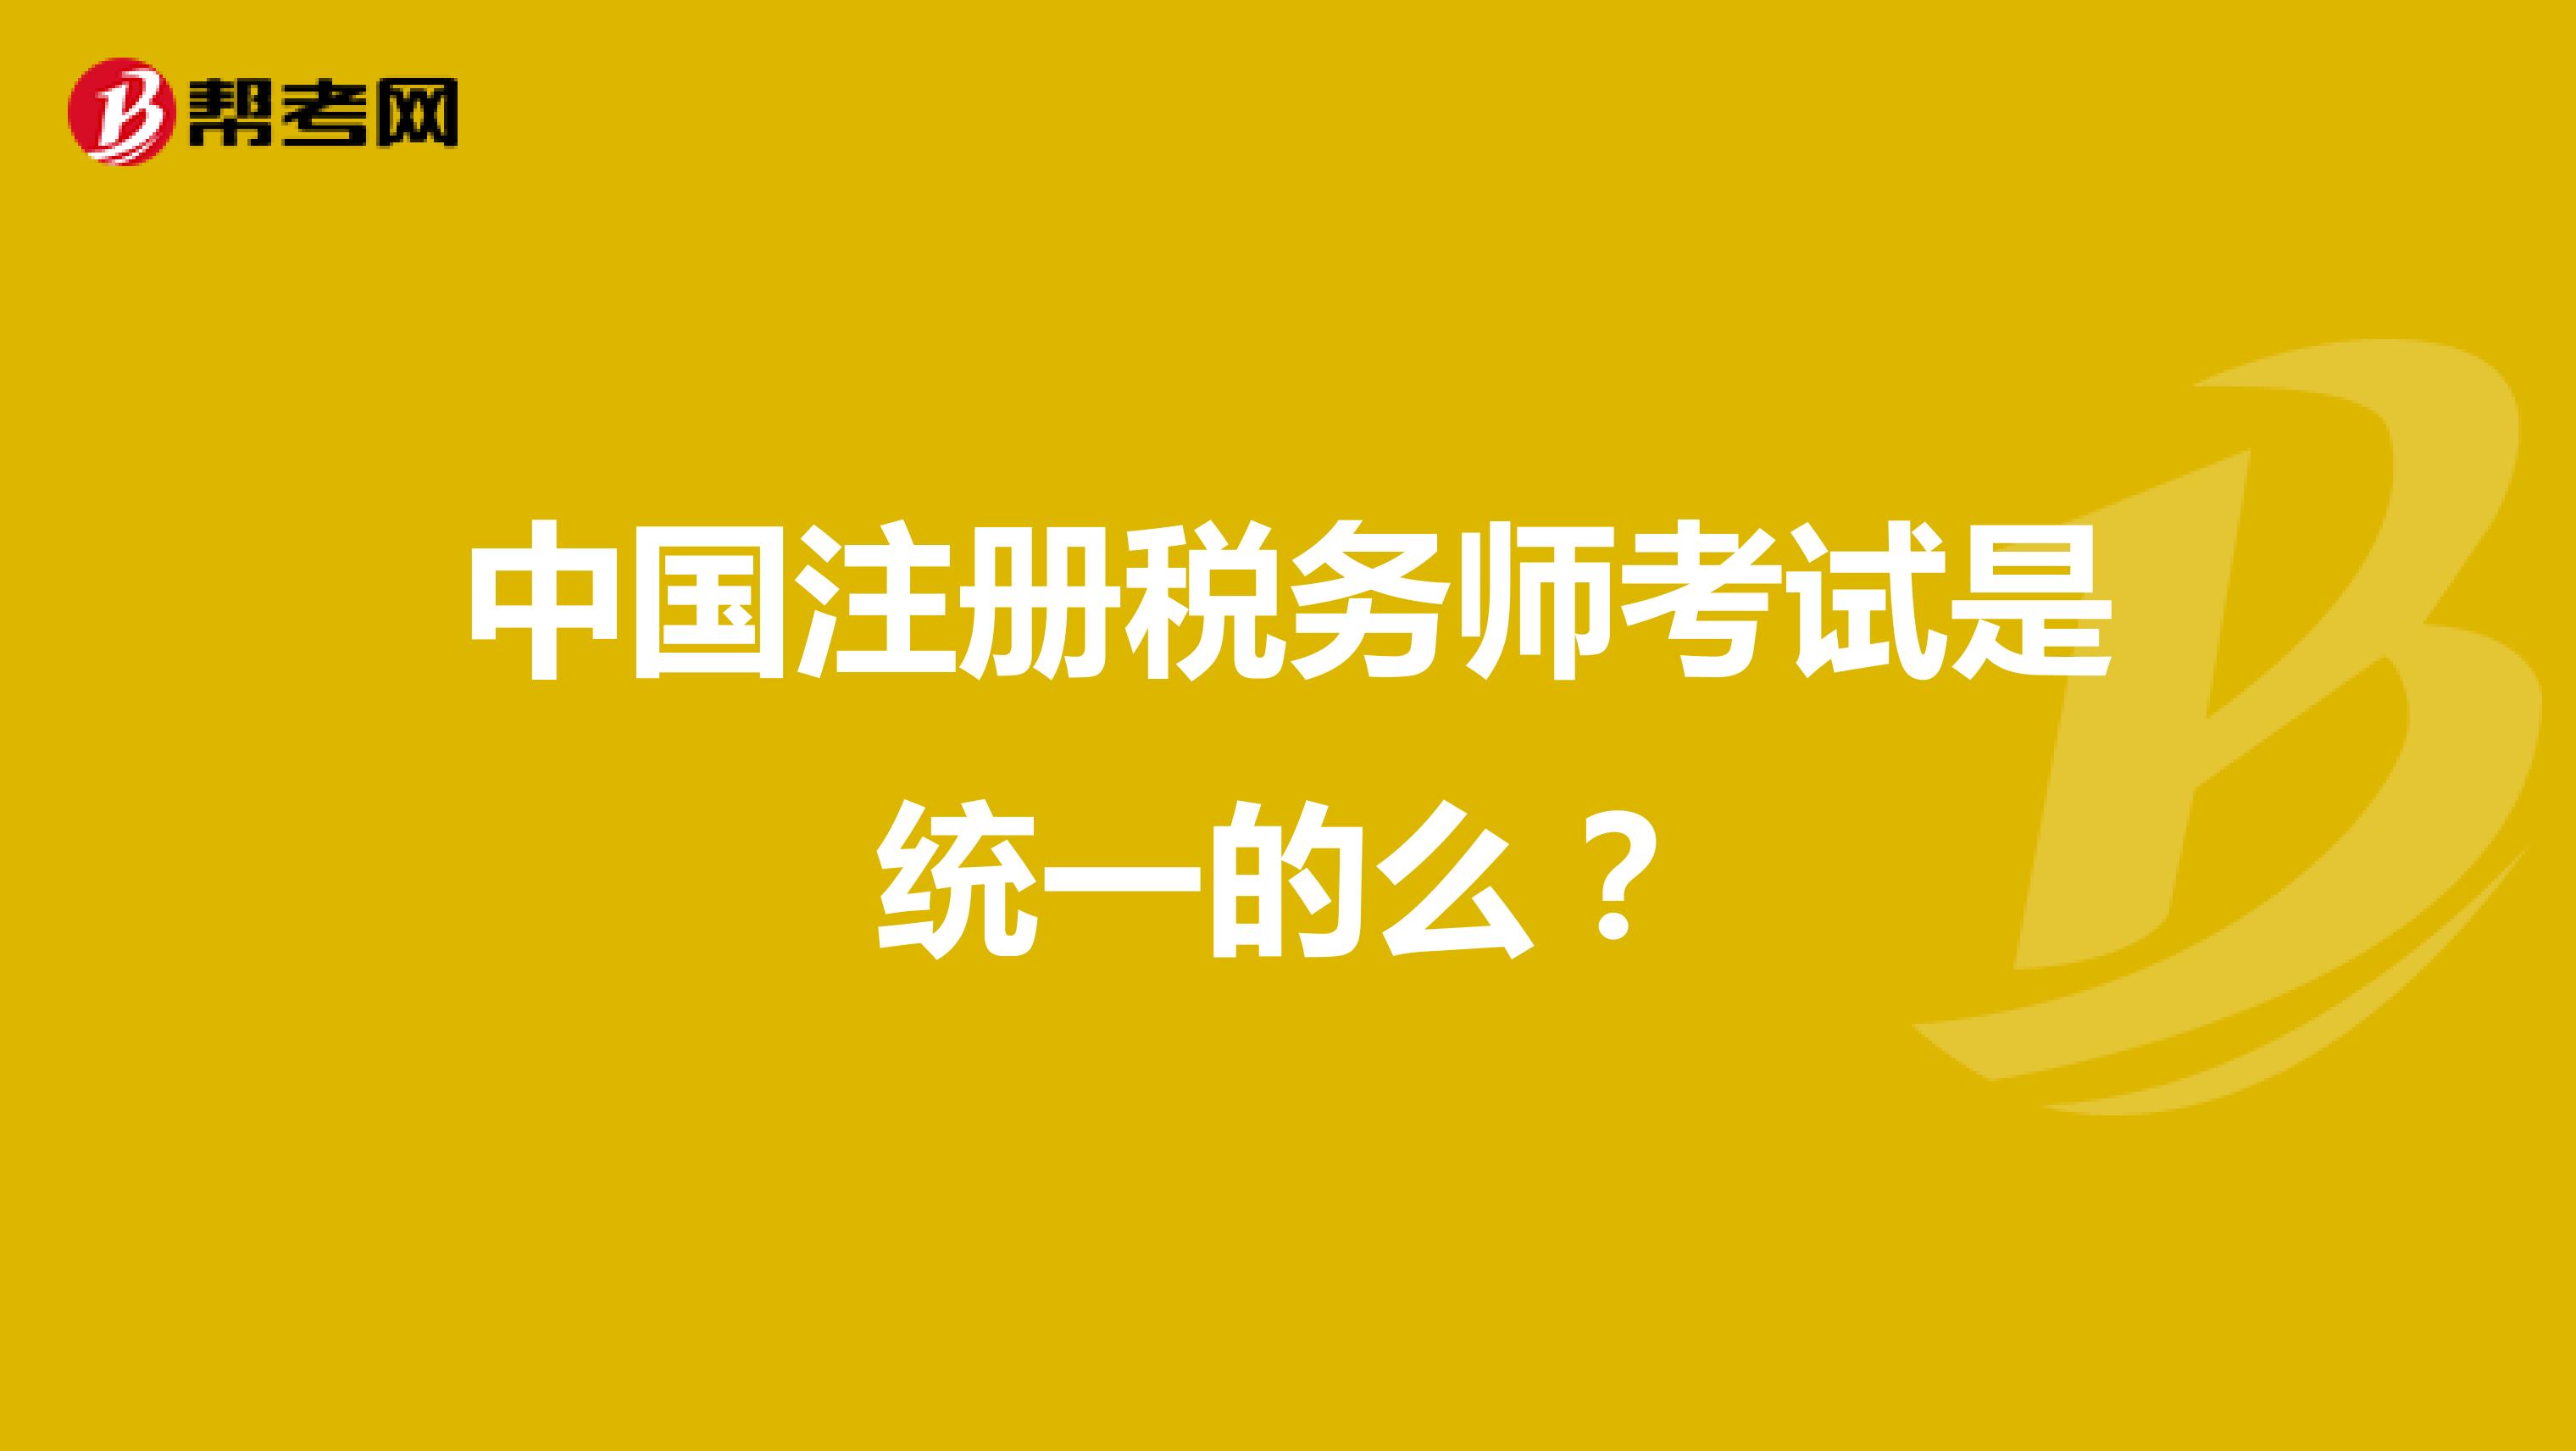 中国注册税务师考试是统一的么？